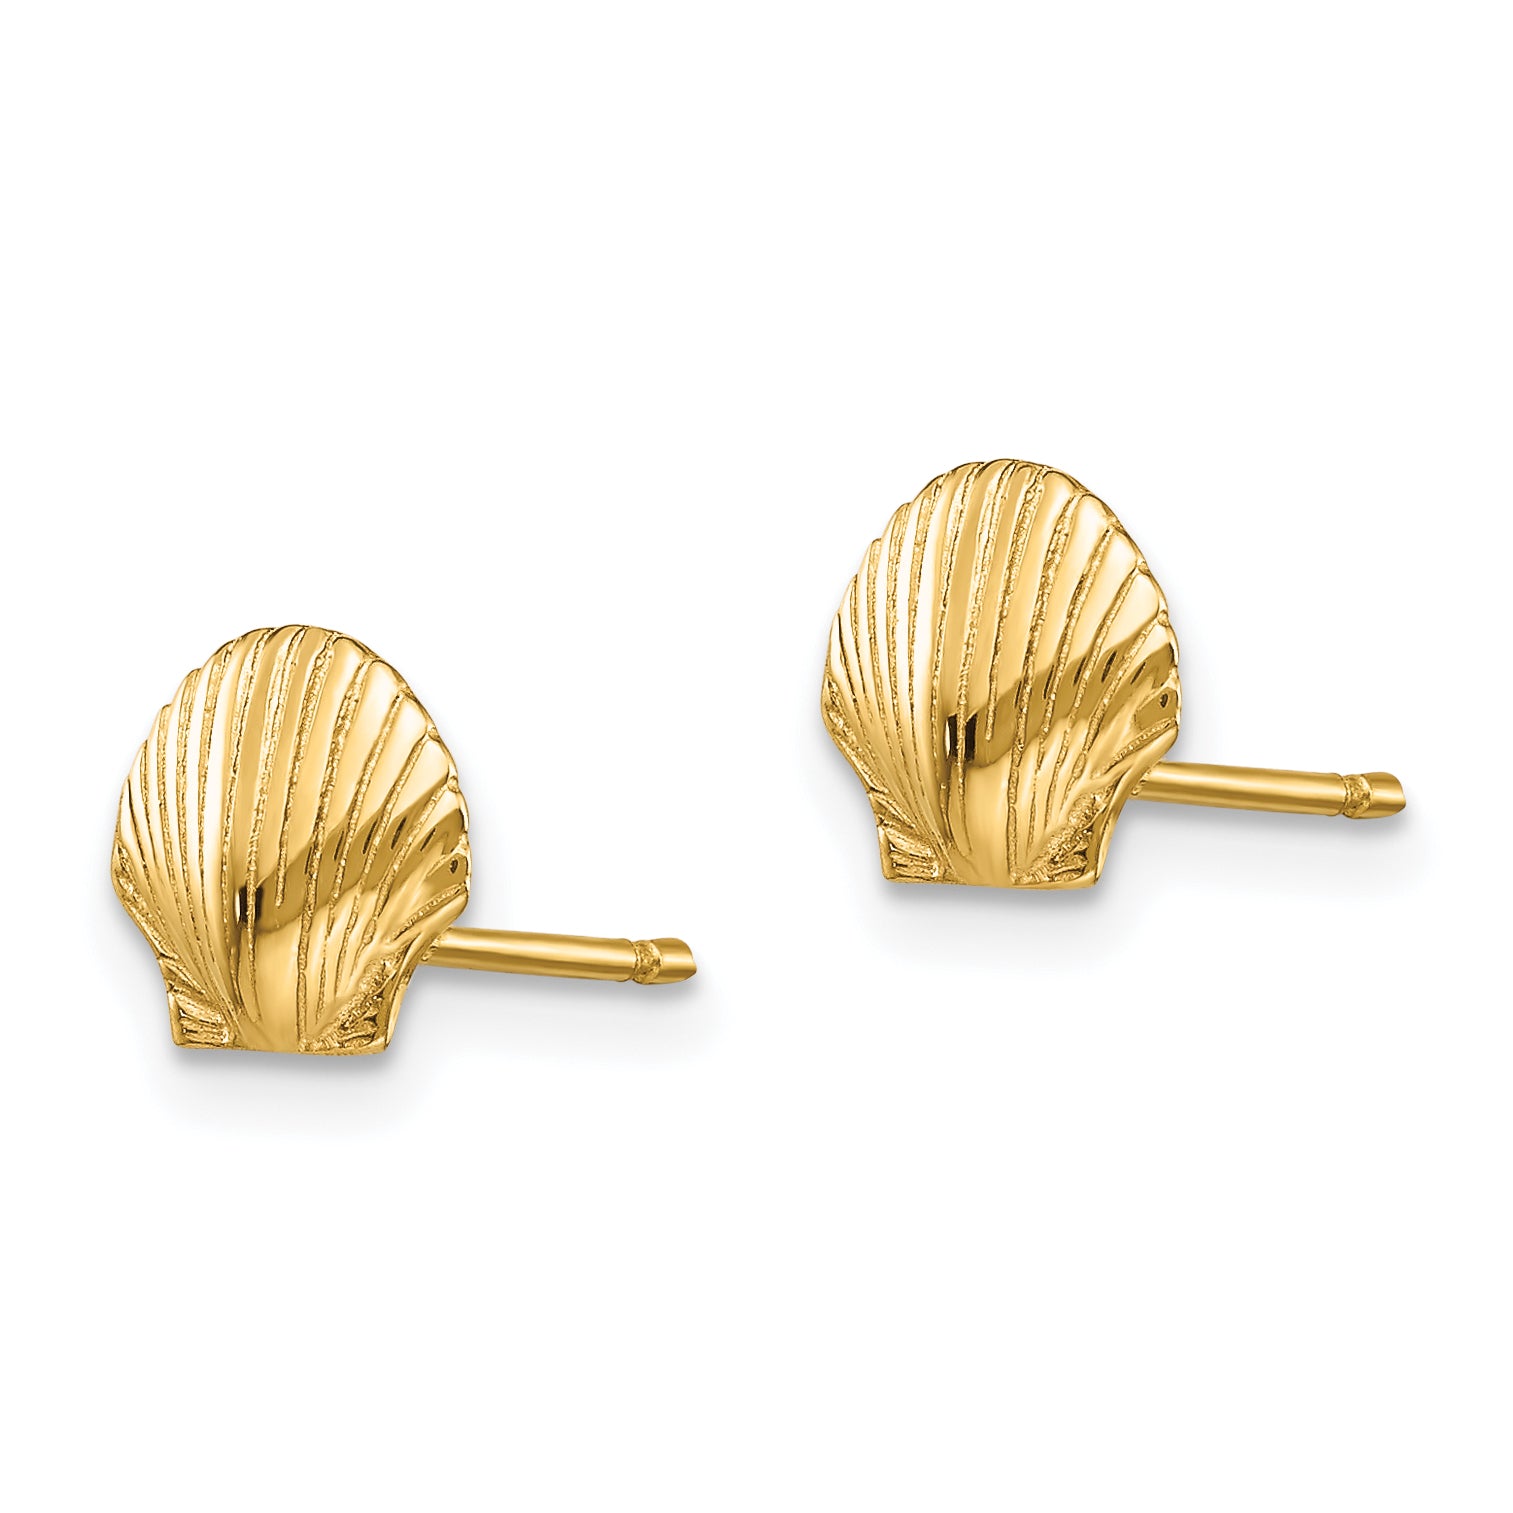 10k Mini Scallop Shell Post Earrings